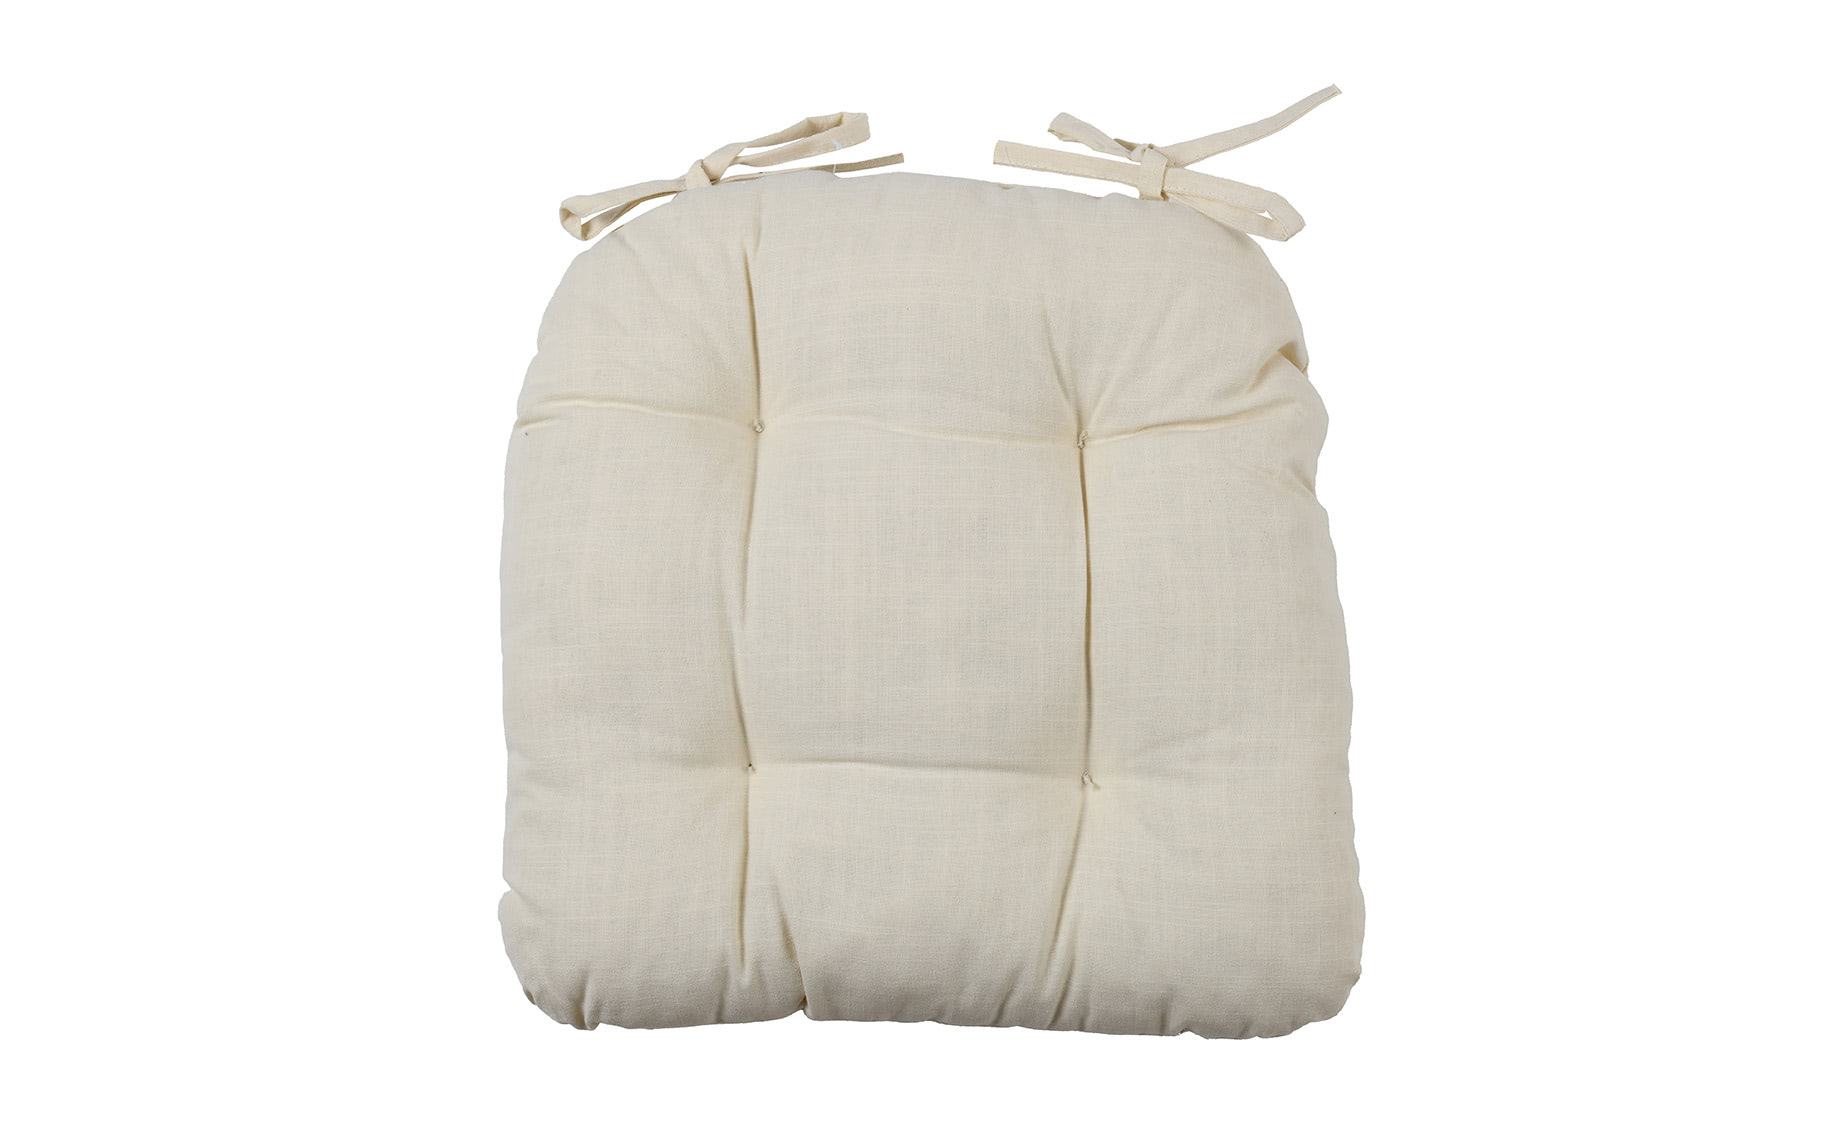 Jastuk za stolicu Syestti 41x43cm beli